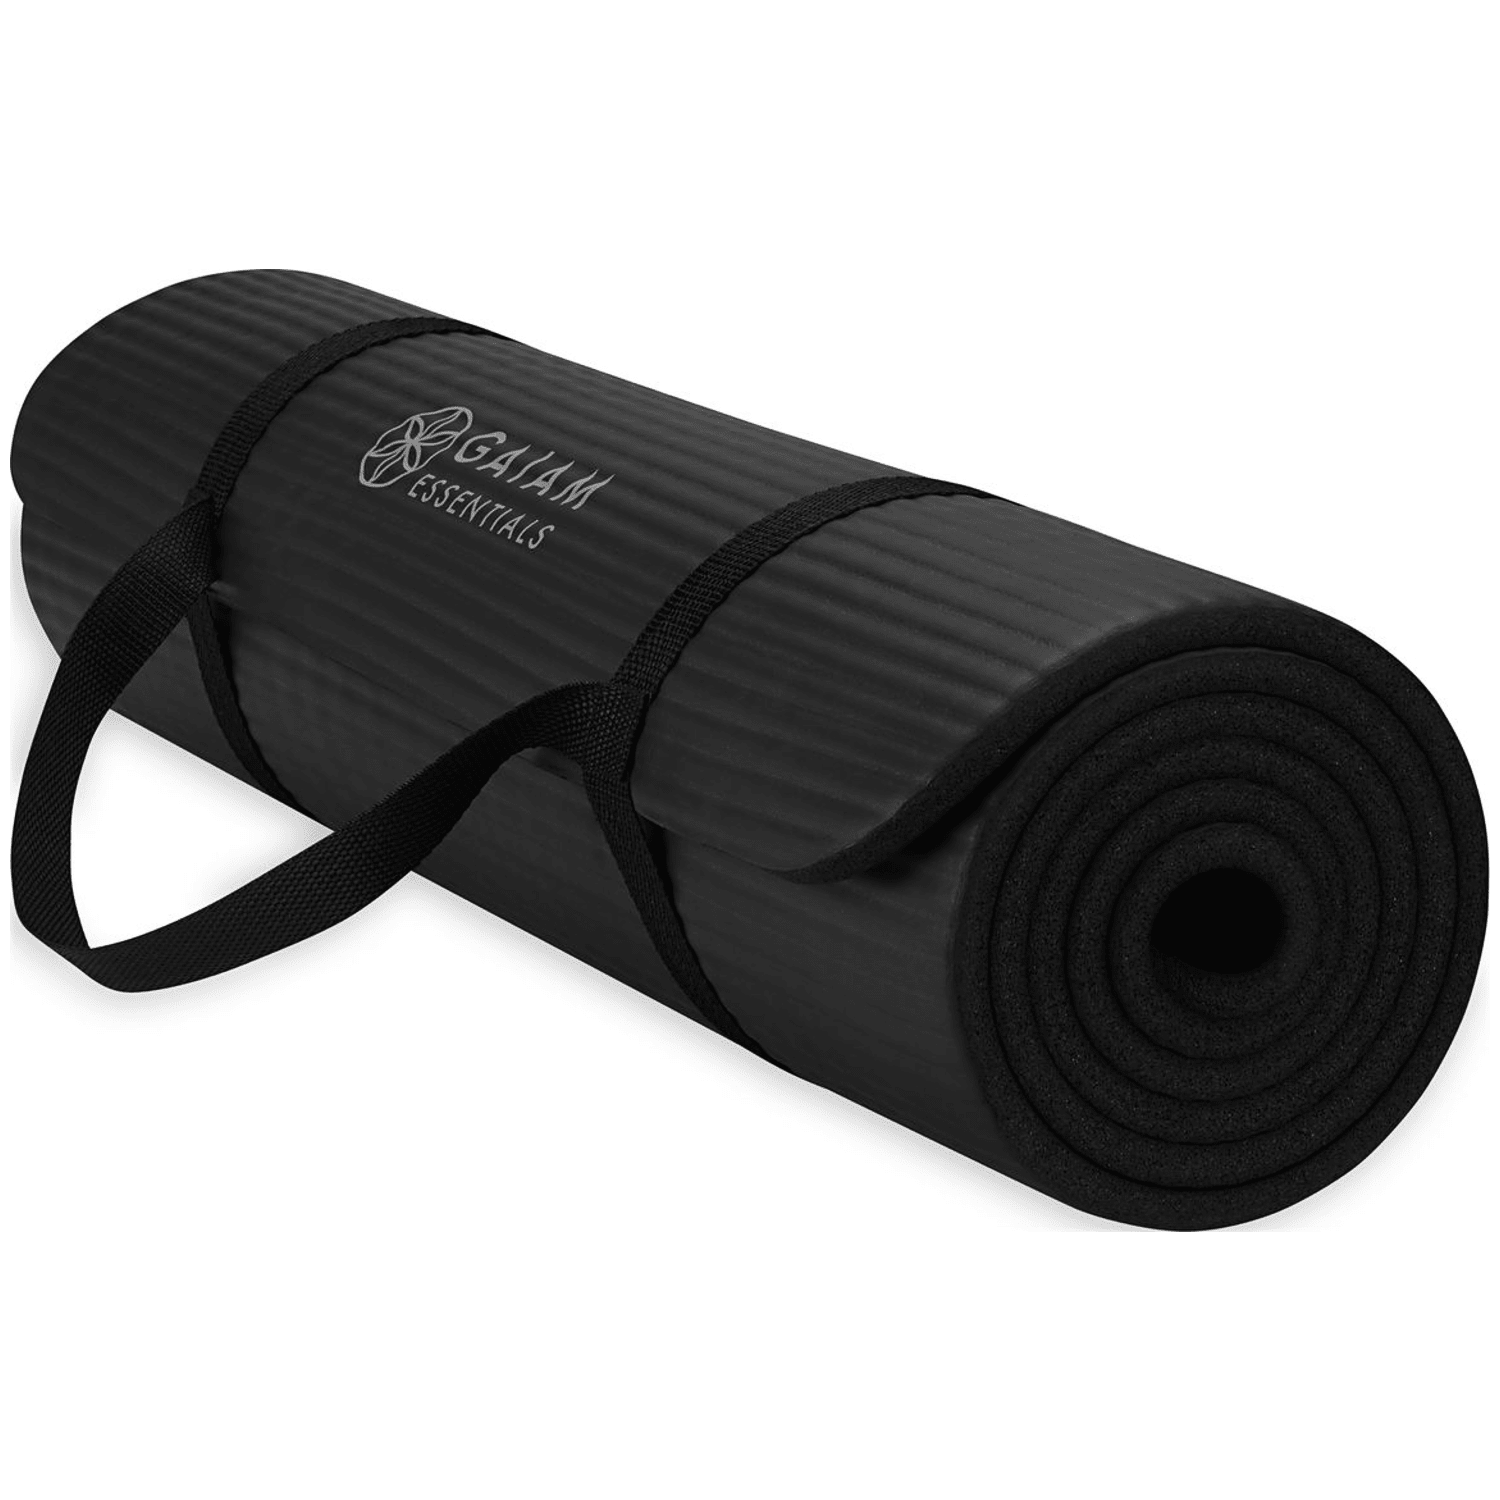 Gaiam Essentials 10Mm Fitness Mat Black Gymnastikmatte